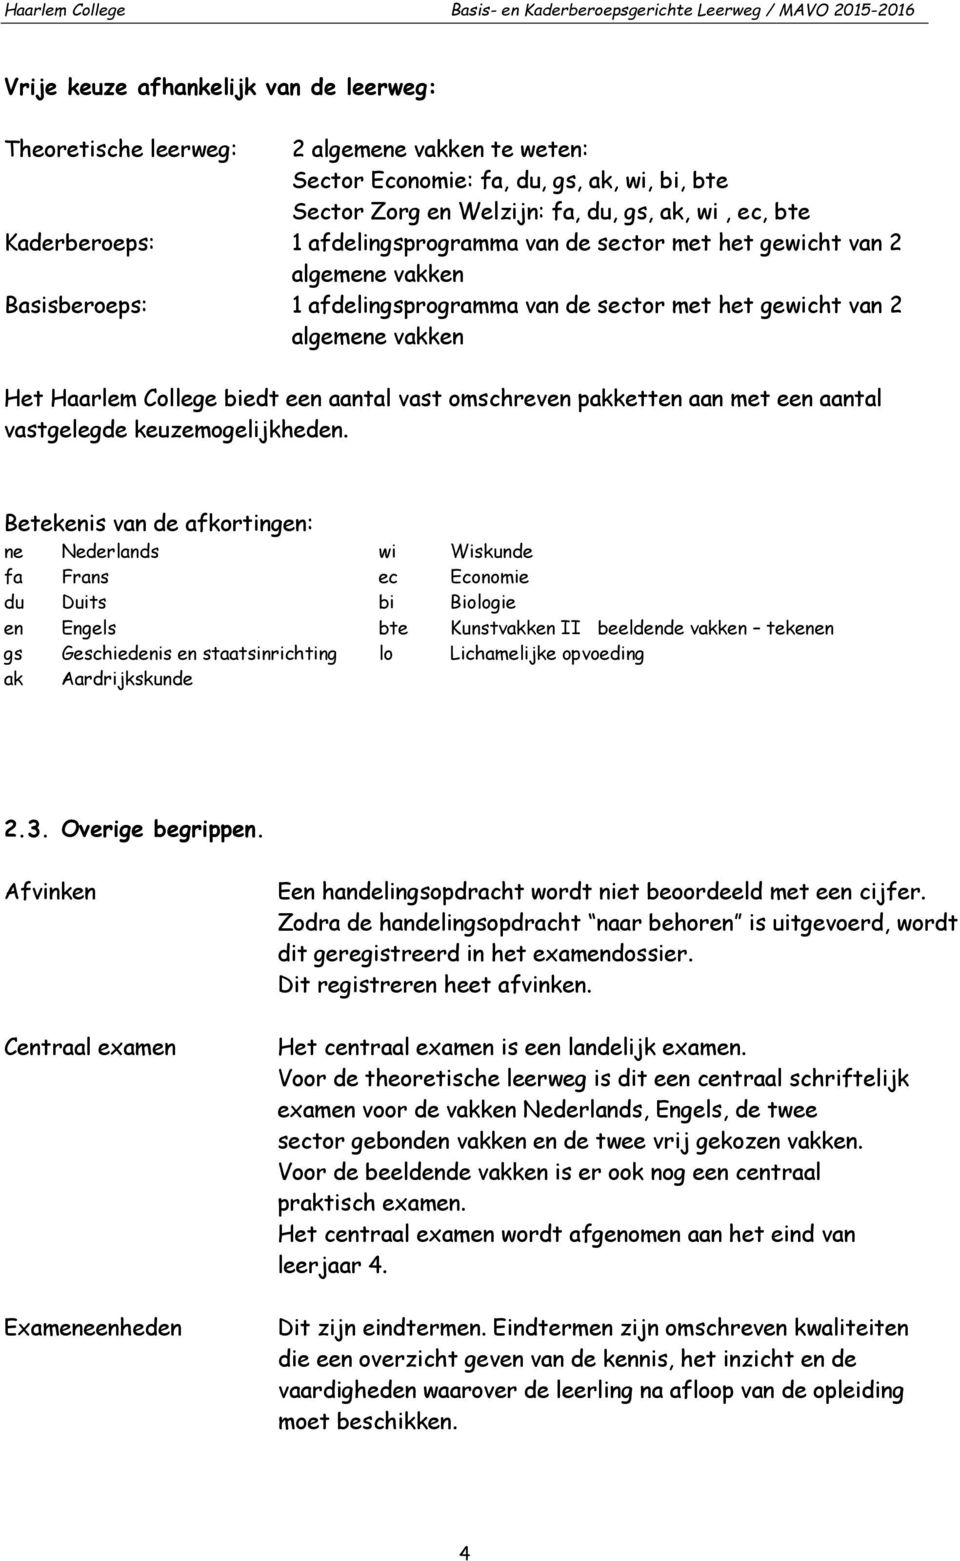 gewicht van algemene vakken Het Haarlem College biedt een aantal vast omschreven pakketten aan met een aantal vastgelegde keuzemogelijkheden.